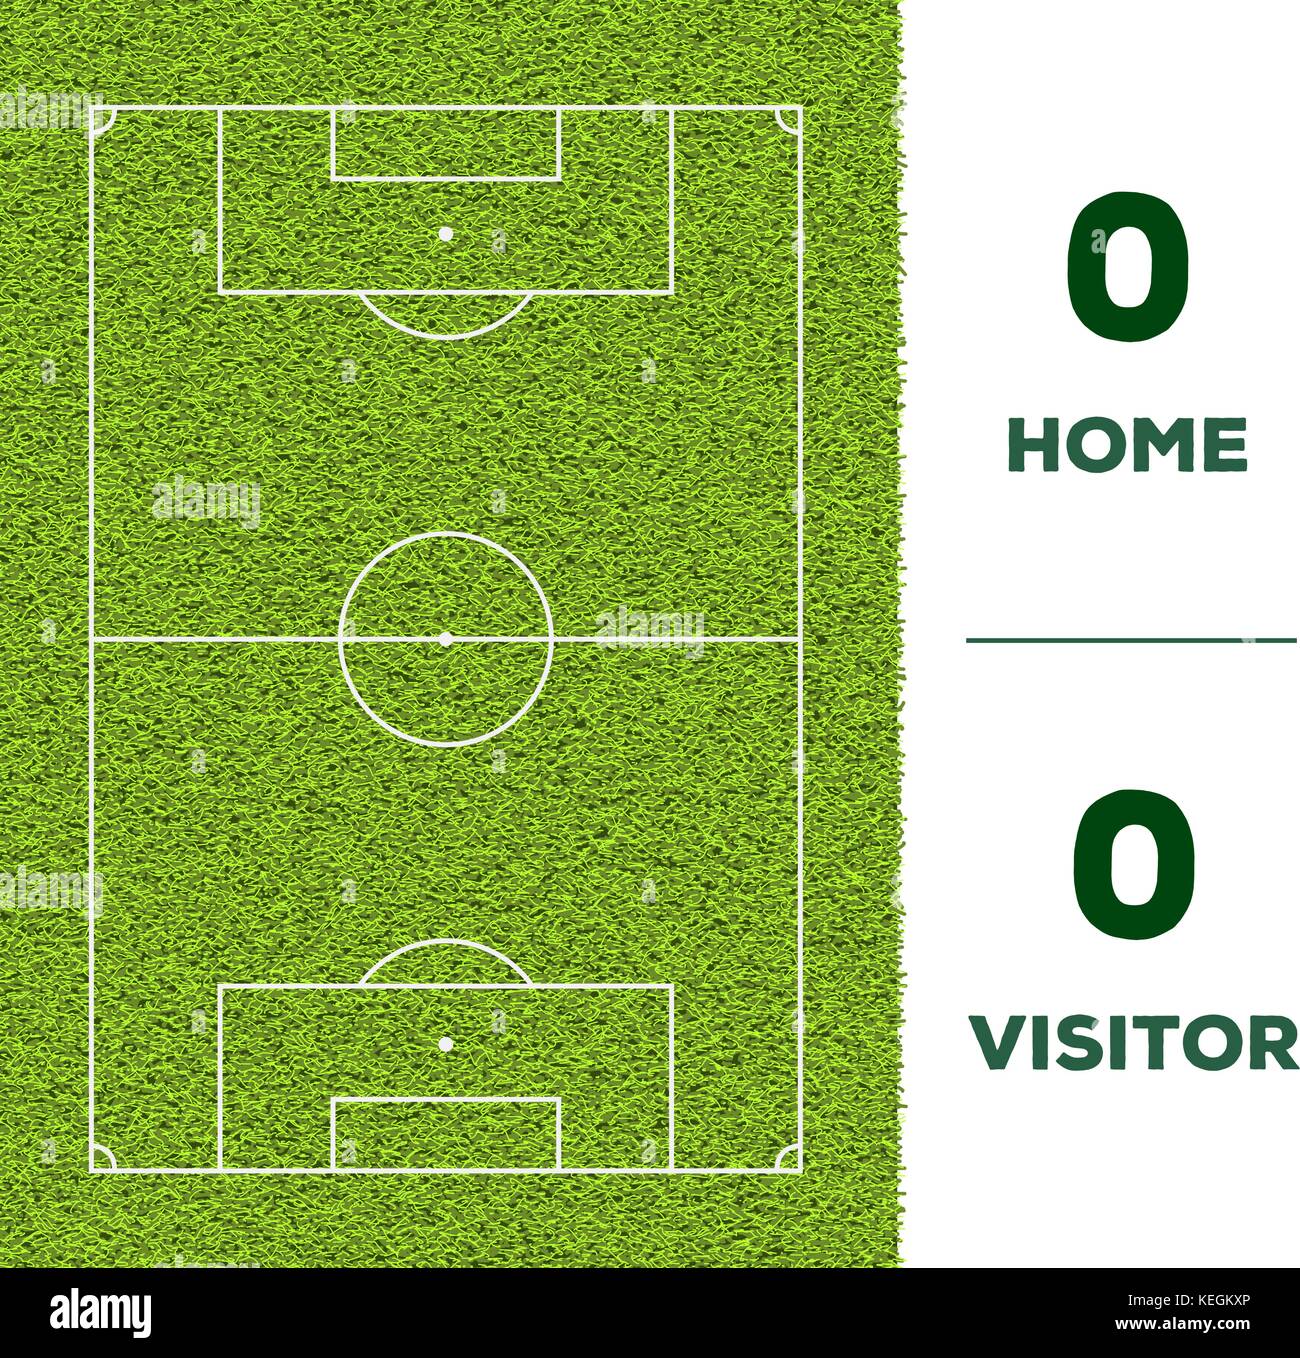 Outdoor linea calcio, gioco Visualizzazione partitura e erba verde dello sfondo dei campi per il mockup Illustrazione Vettoriale